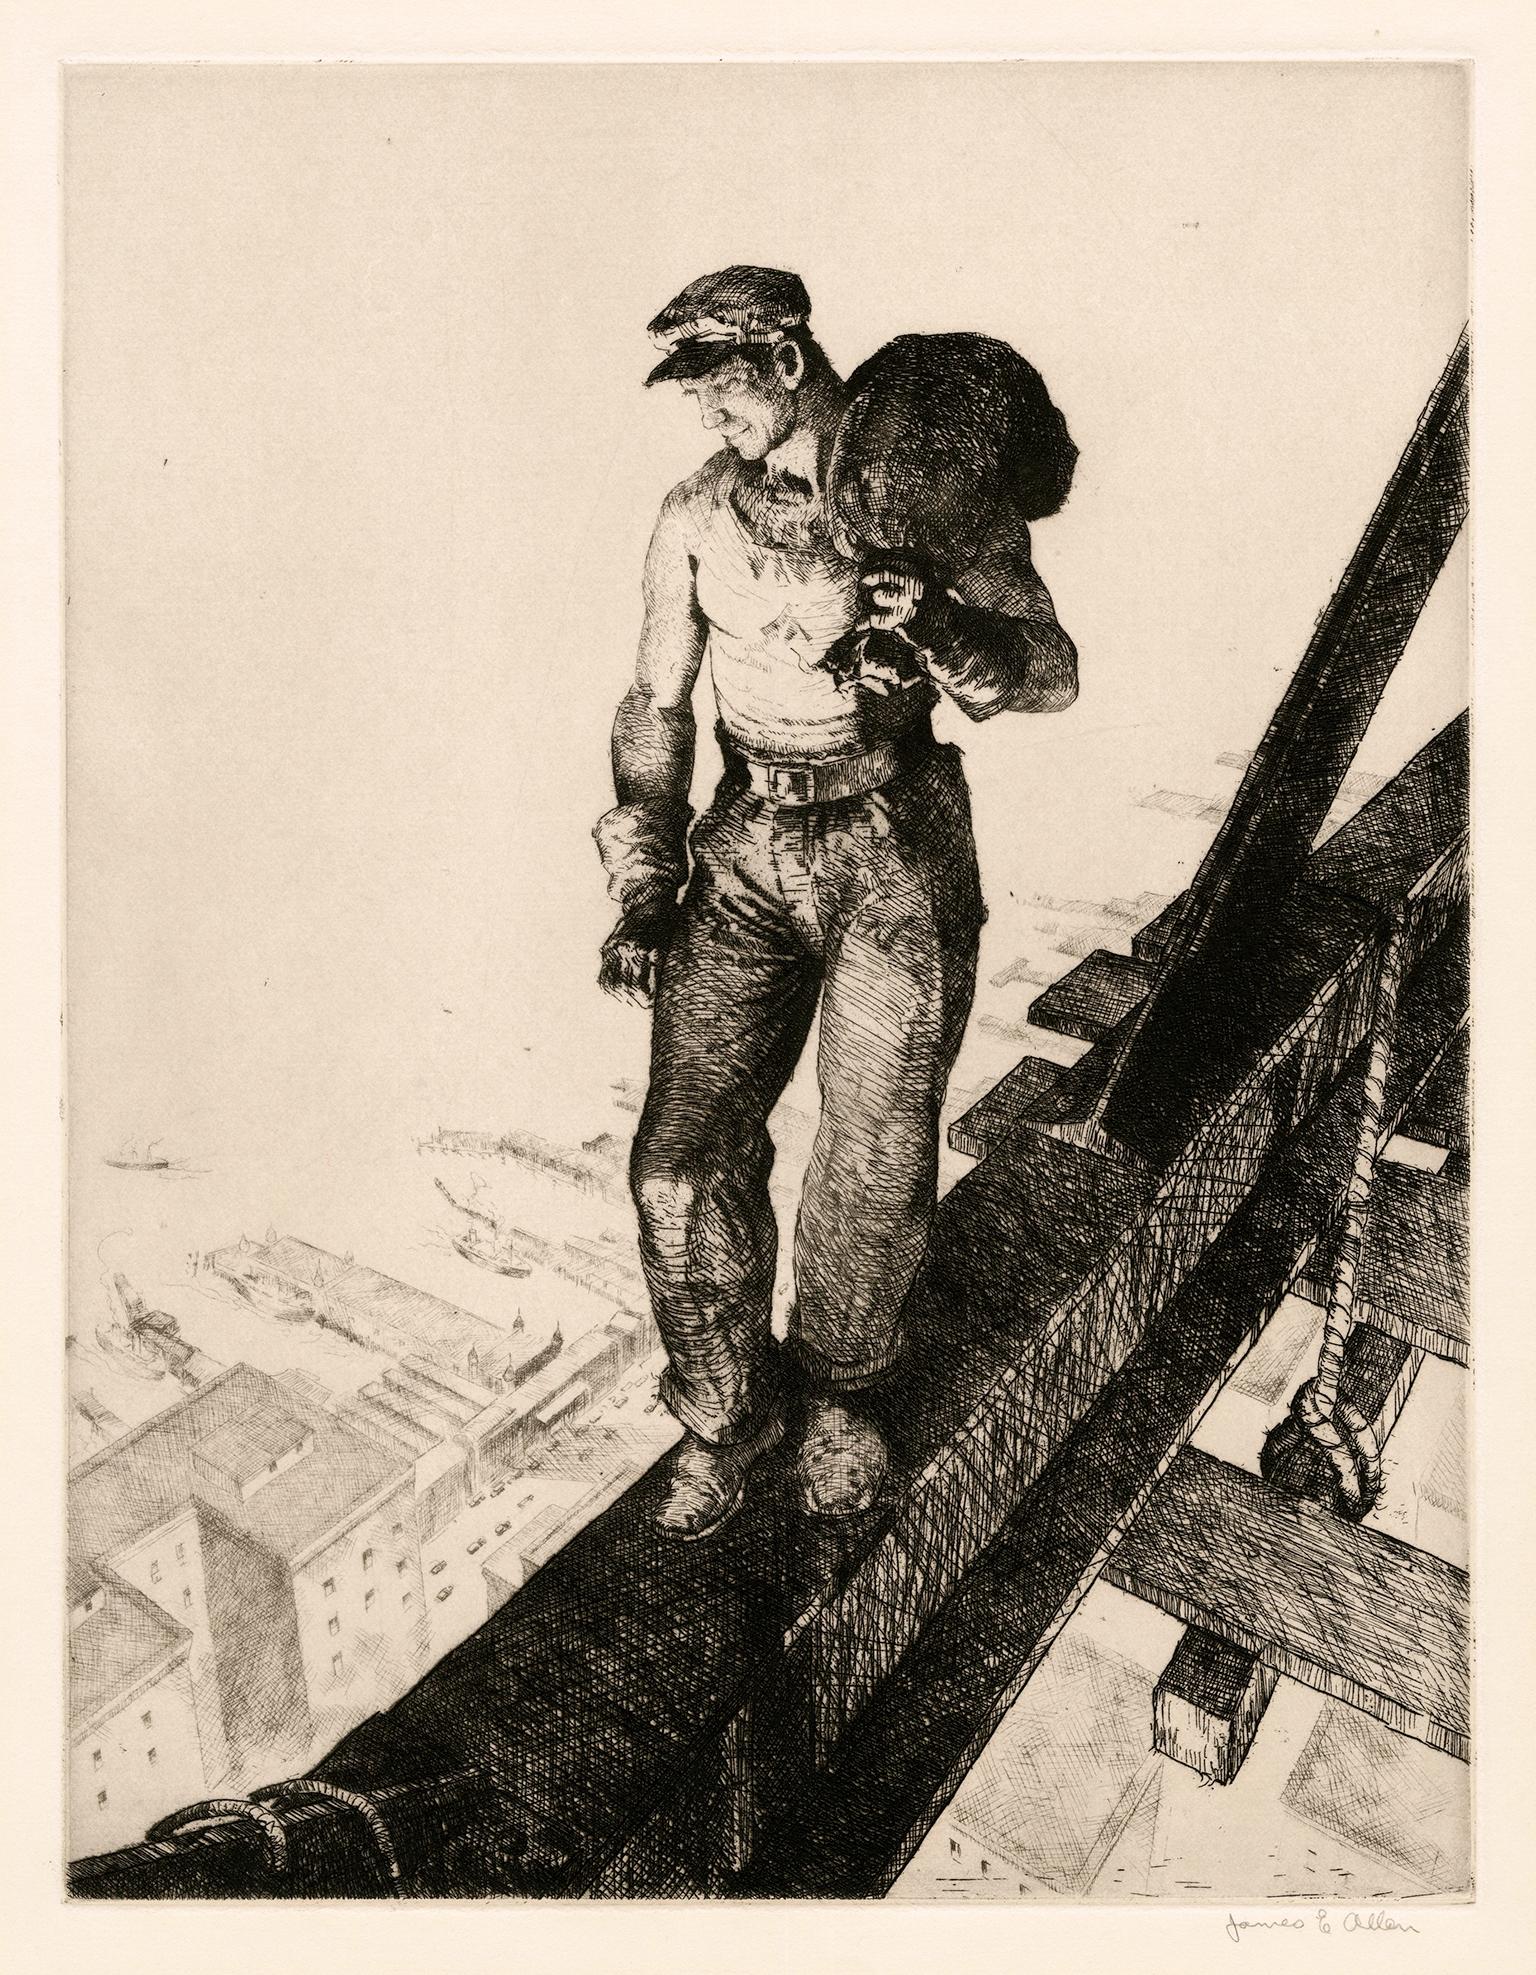 James Allen Figurative Print – Spiderboy" - Amerikanischer Realismus der 1930er Jahre, New York City